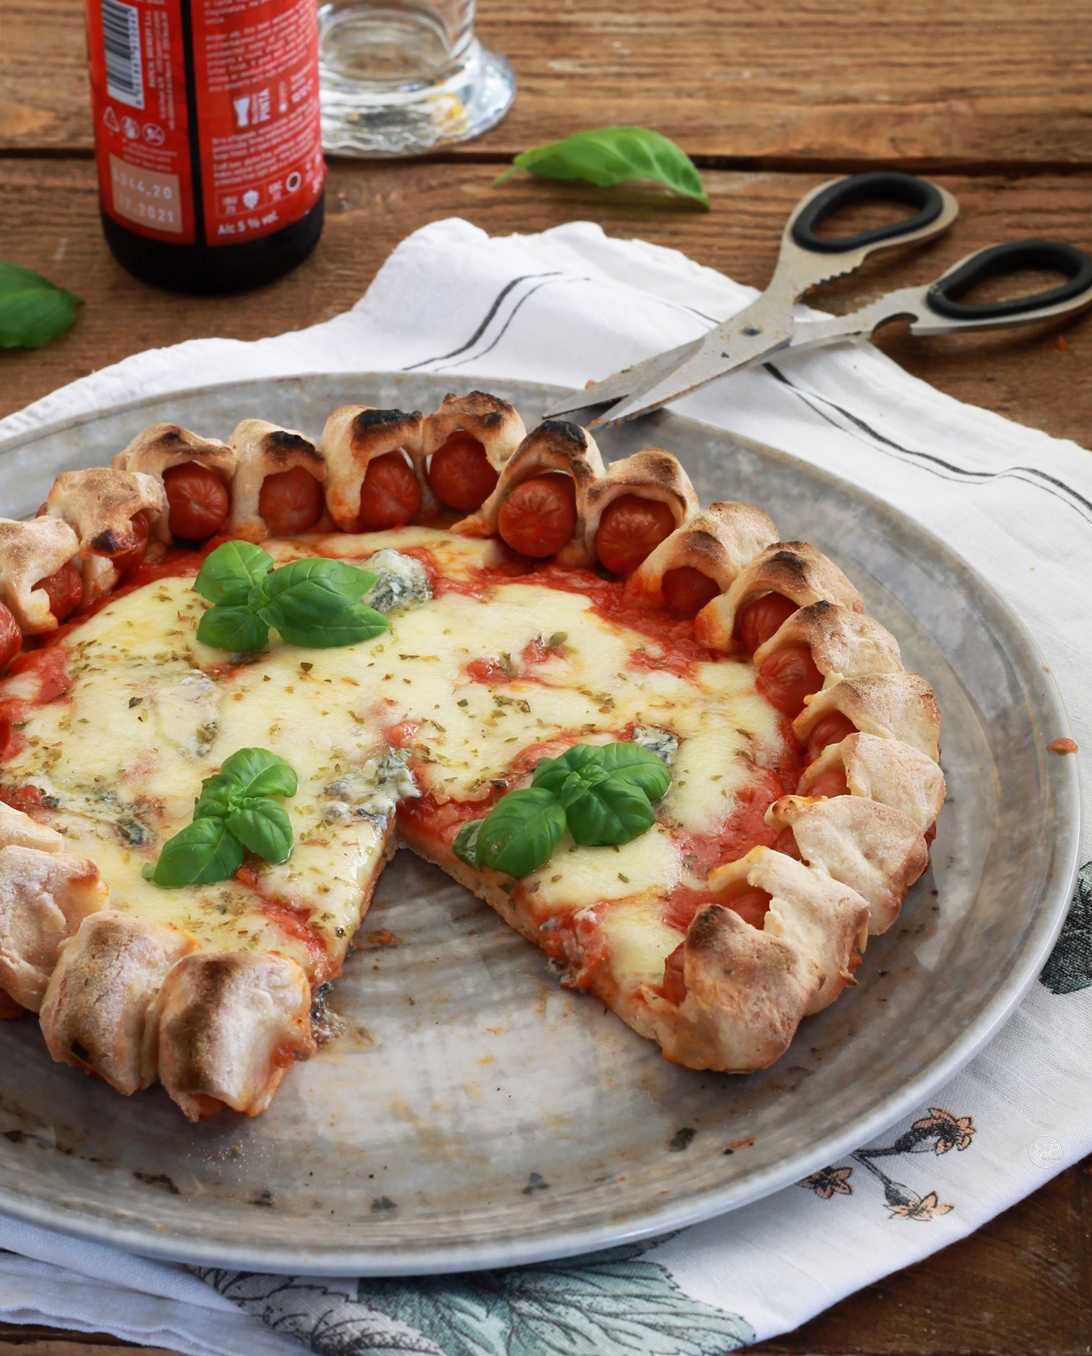 Wursty pizza sans gluten - La Cassata Celiaca